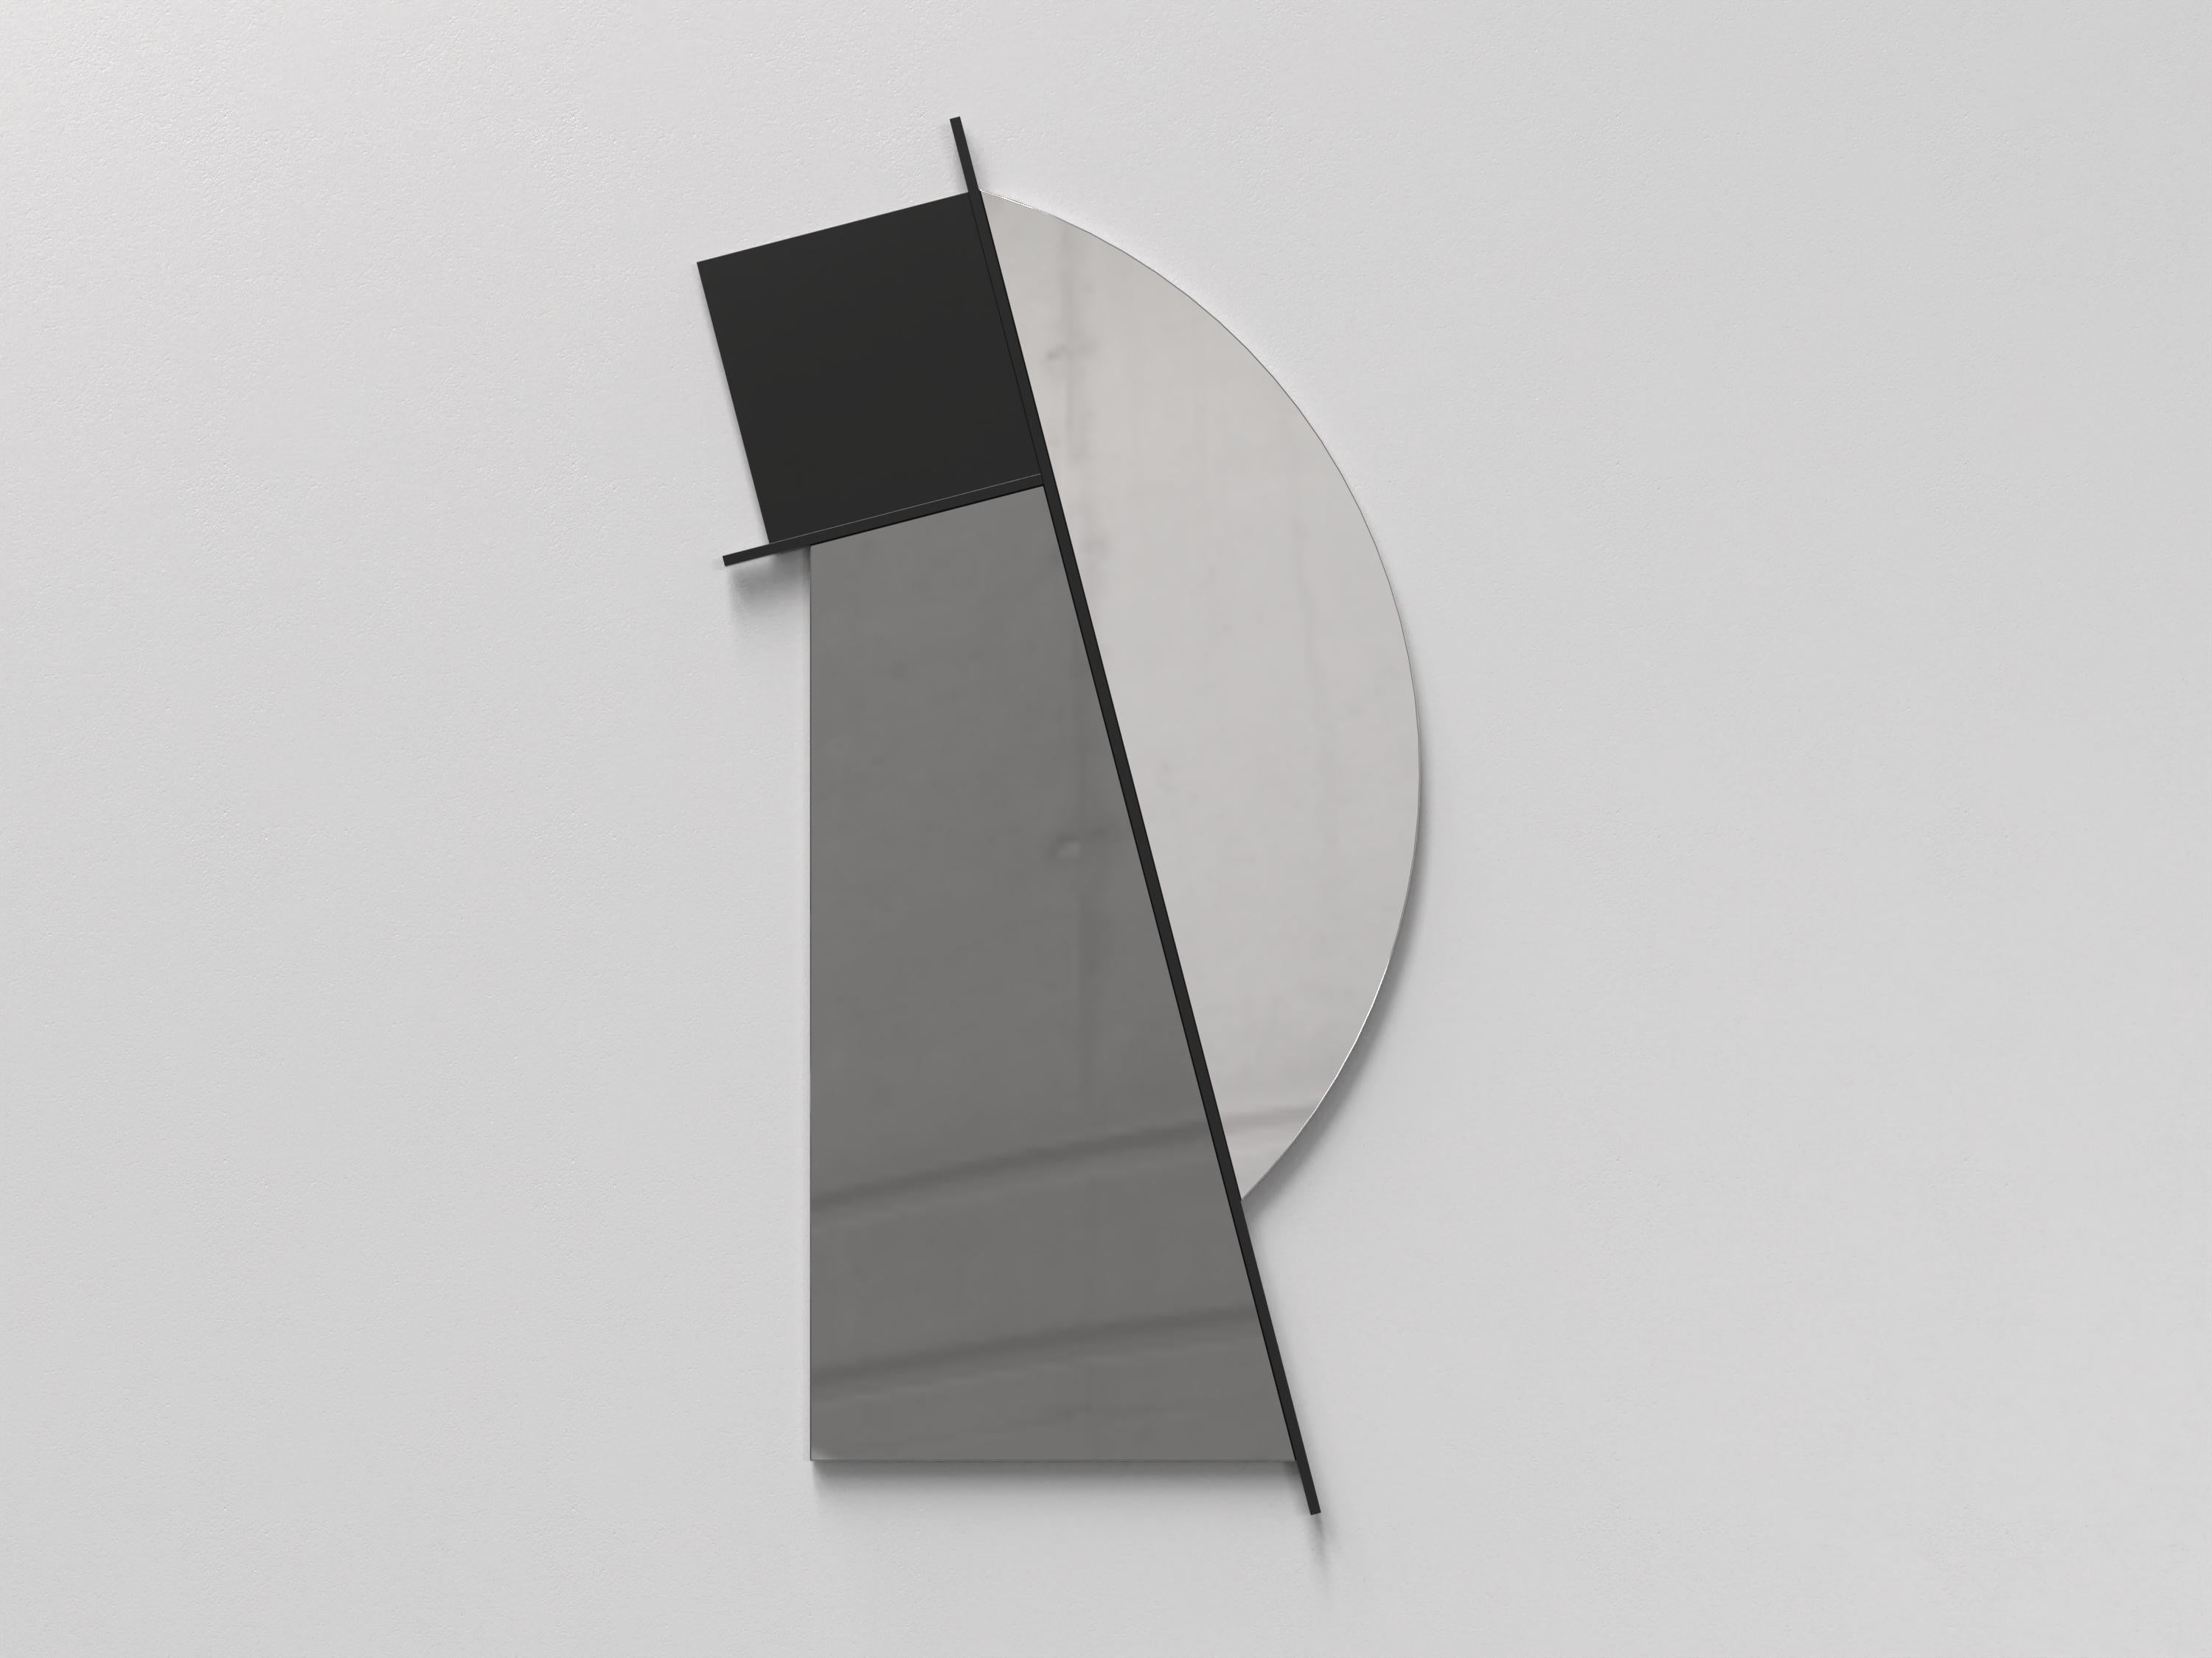 Italian Contemporary Limited Edition Signed Brass Mirror, Nova V2 by Edizione Limitata For Sale